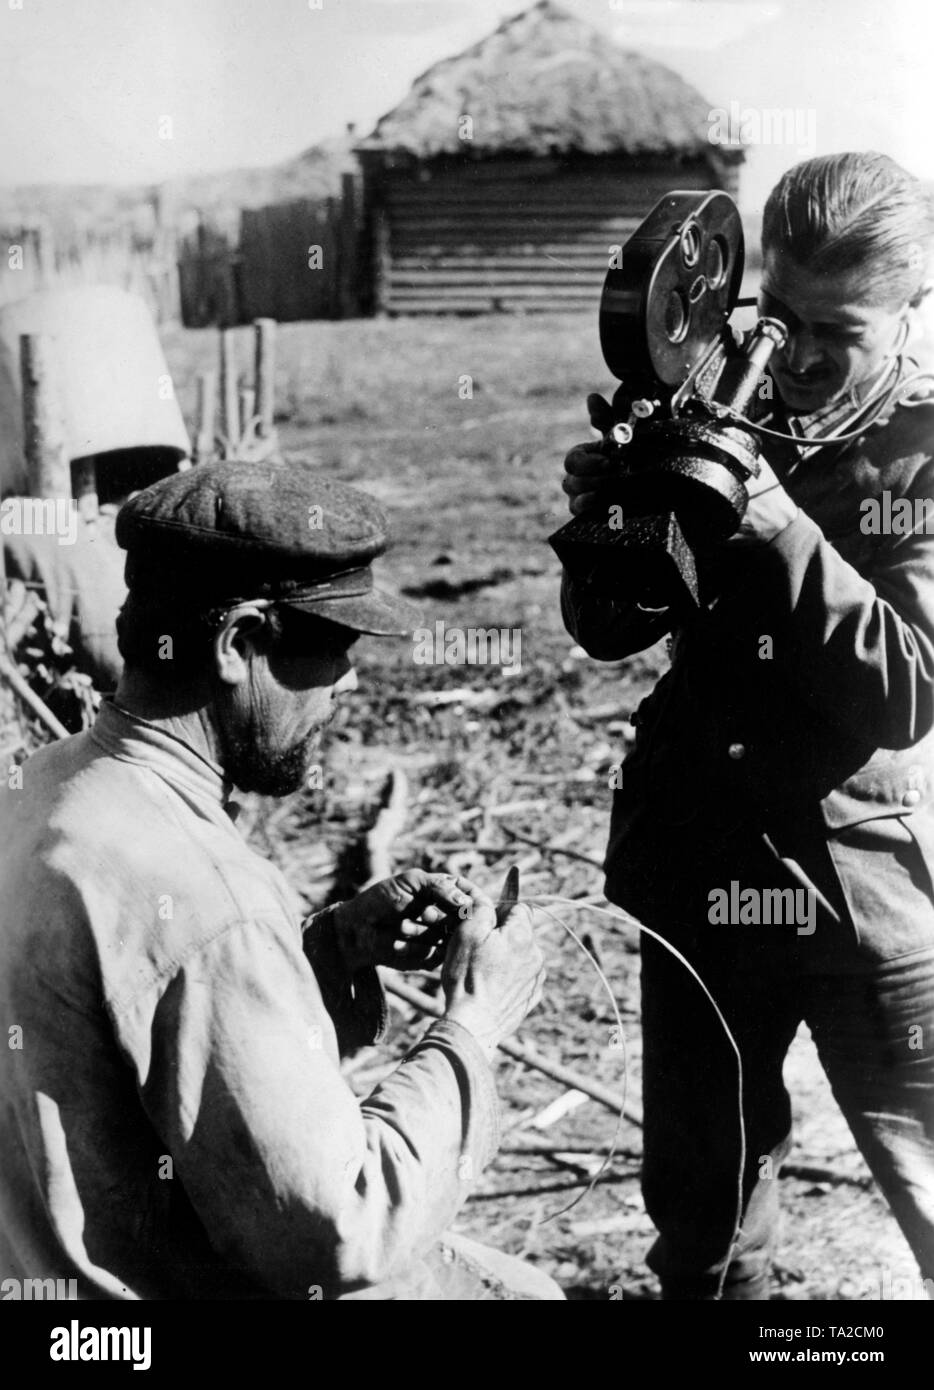 Correspondant de guerre allemand soviétique films paysans au cours de la production de l'opanaks traditionnels. La photo était censée illustrer la pénurie de matières premières de la population soviétique. Photo : correspondant de guerre Goehring Banque D'Images